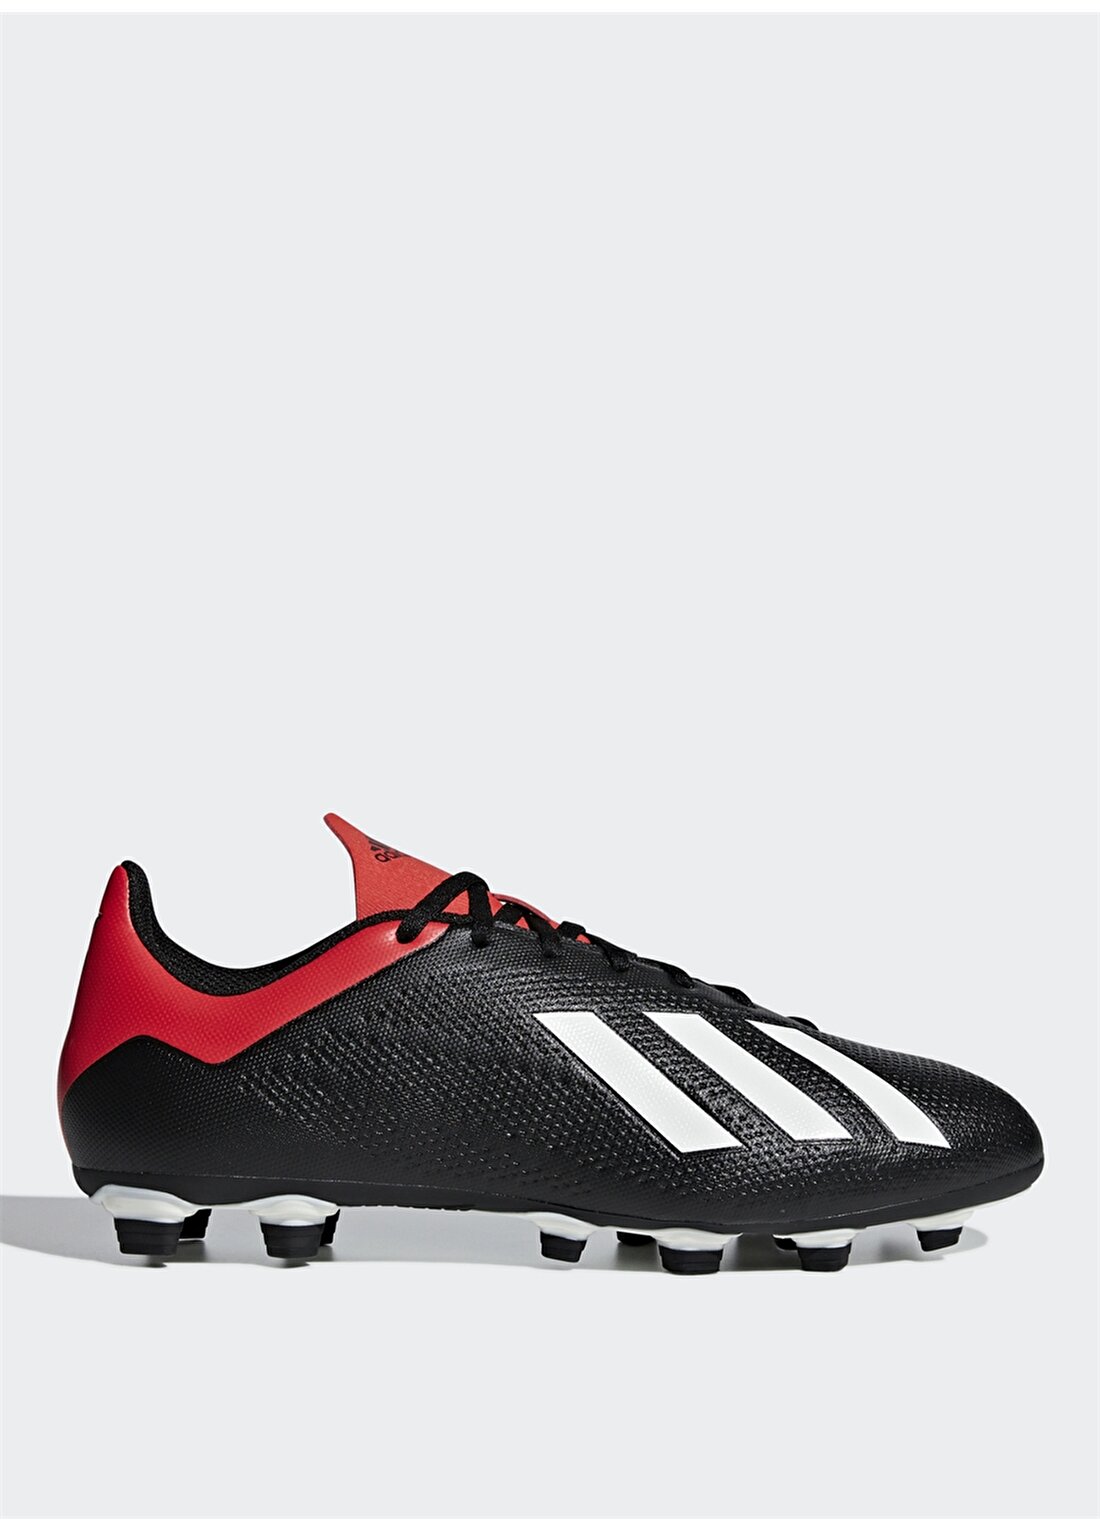 Adidas Siyah - Kırmızı Erkek Futbol Ayakkabısı